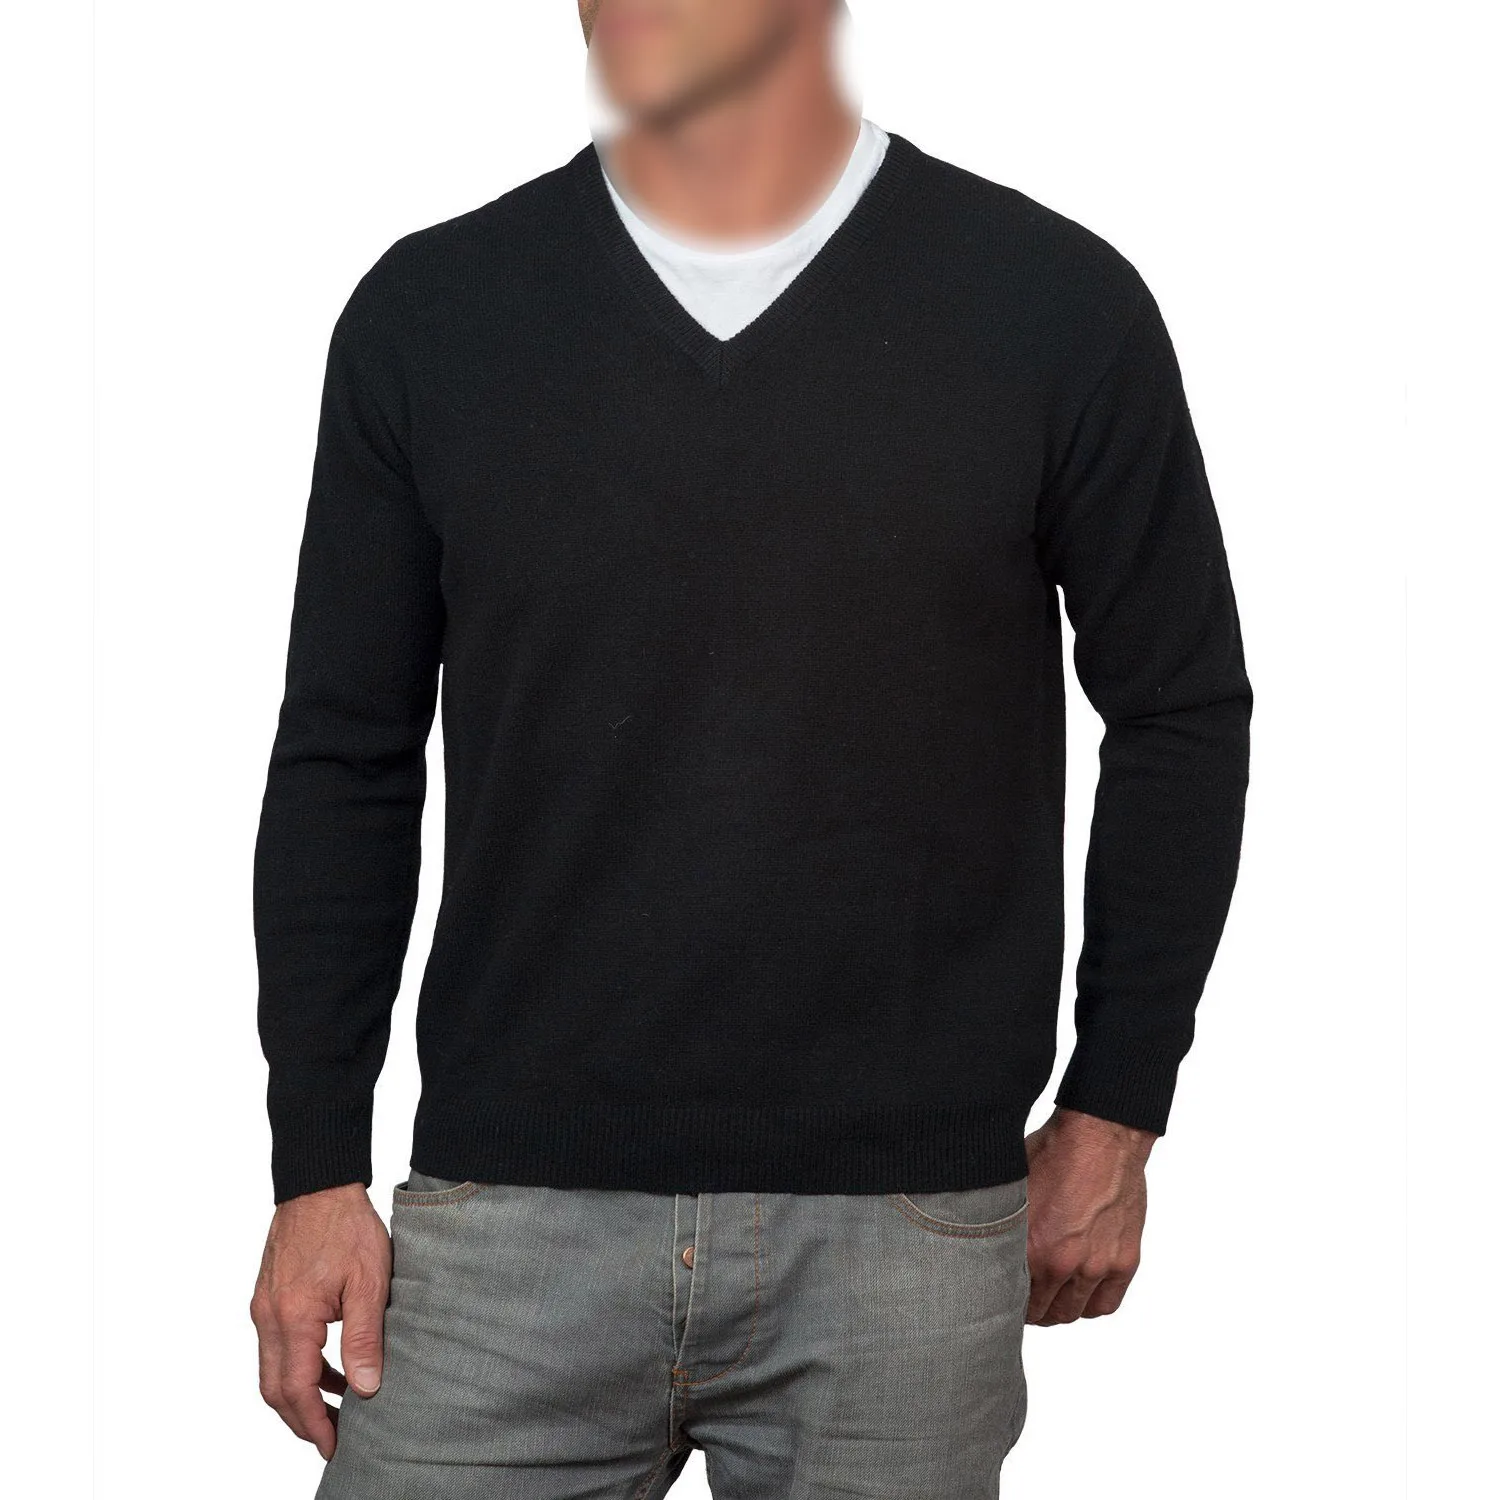 2017 Новый Повседневное Slim Fit v-образным вырезом вязаный Кардиган-пуловер свитер Топы корректирующие